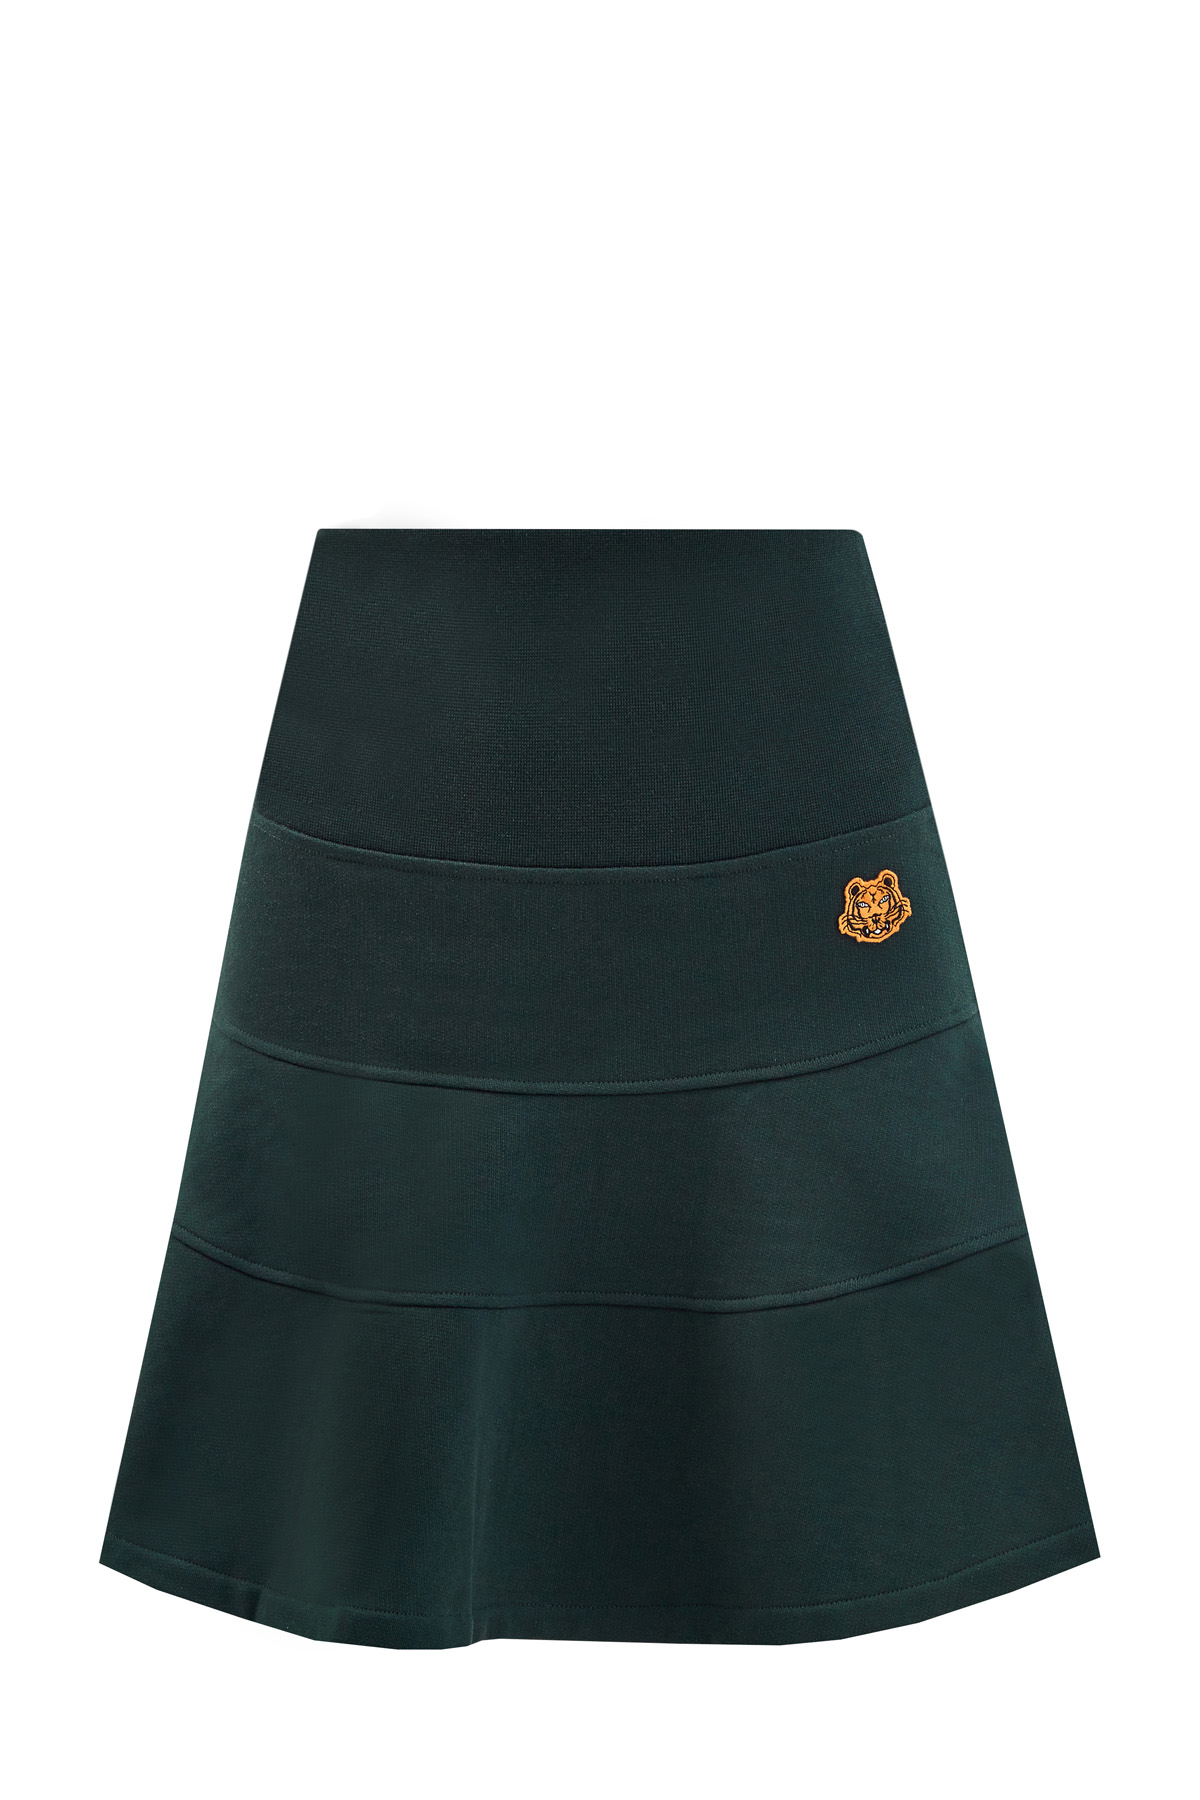 Расклешенная юбка из плотной хлопковой пряжи с патчем Tiger KENZO, цвет зеленый, размер M;L;S - фото 1